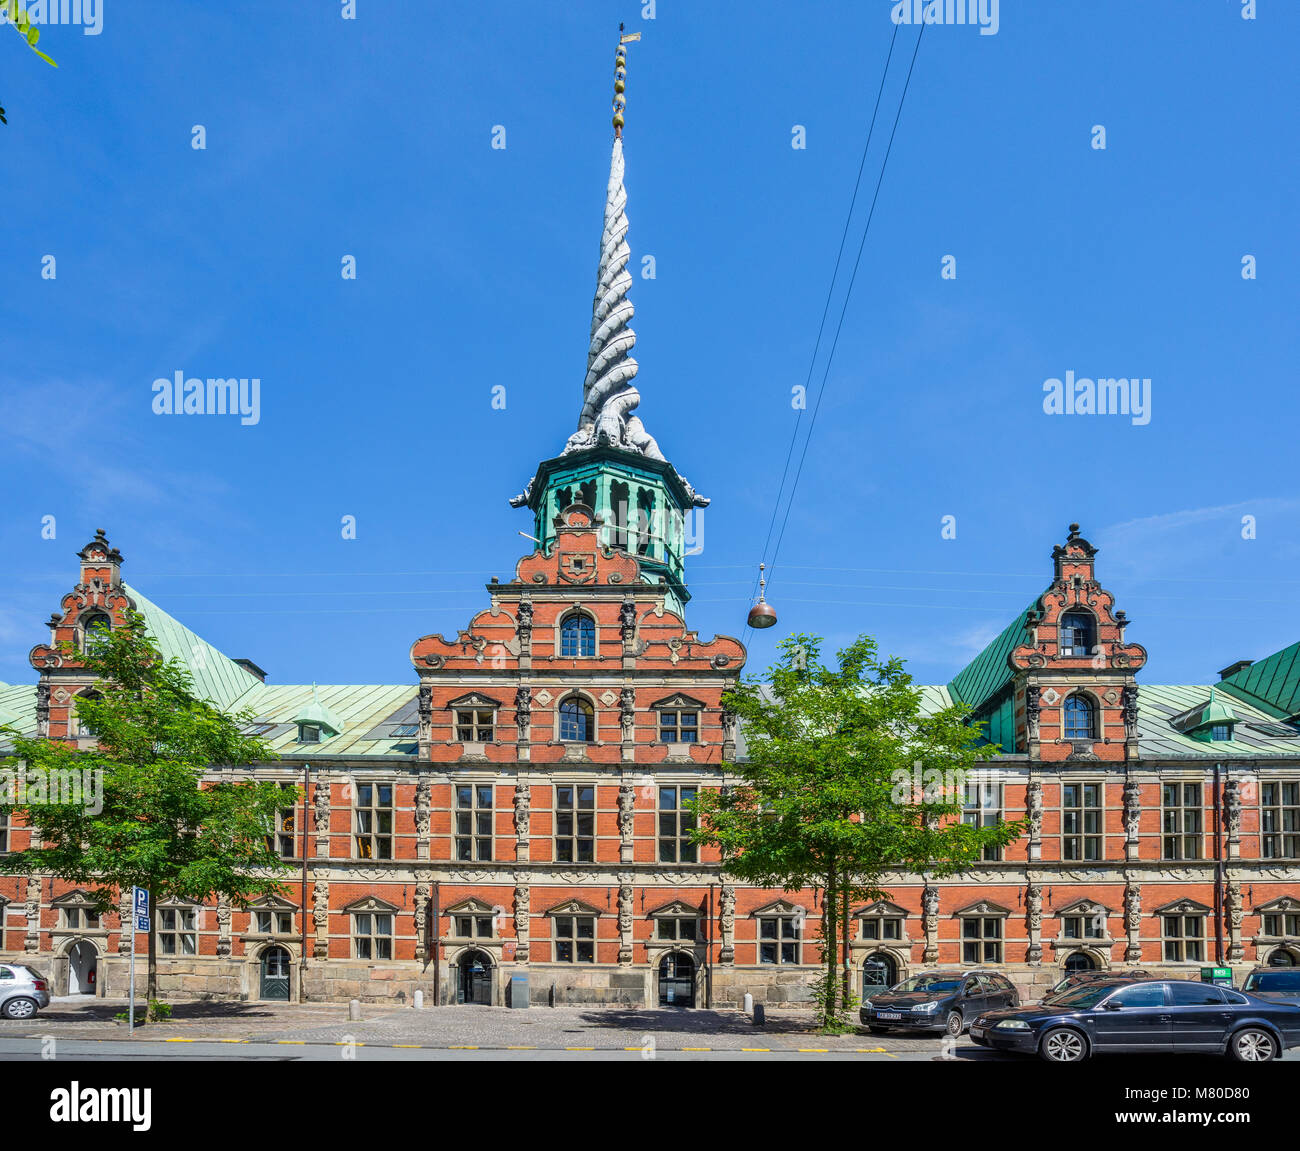 Dänemark, Seeland, Kopenhagen, Blick auf die Børsen, Royal Exchange, der ehemaligen Börse mit dem markanten Turm, wie die Schwänze der vier dr geformt Stockfoto